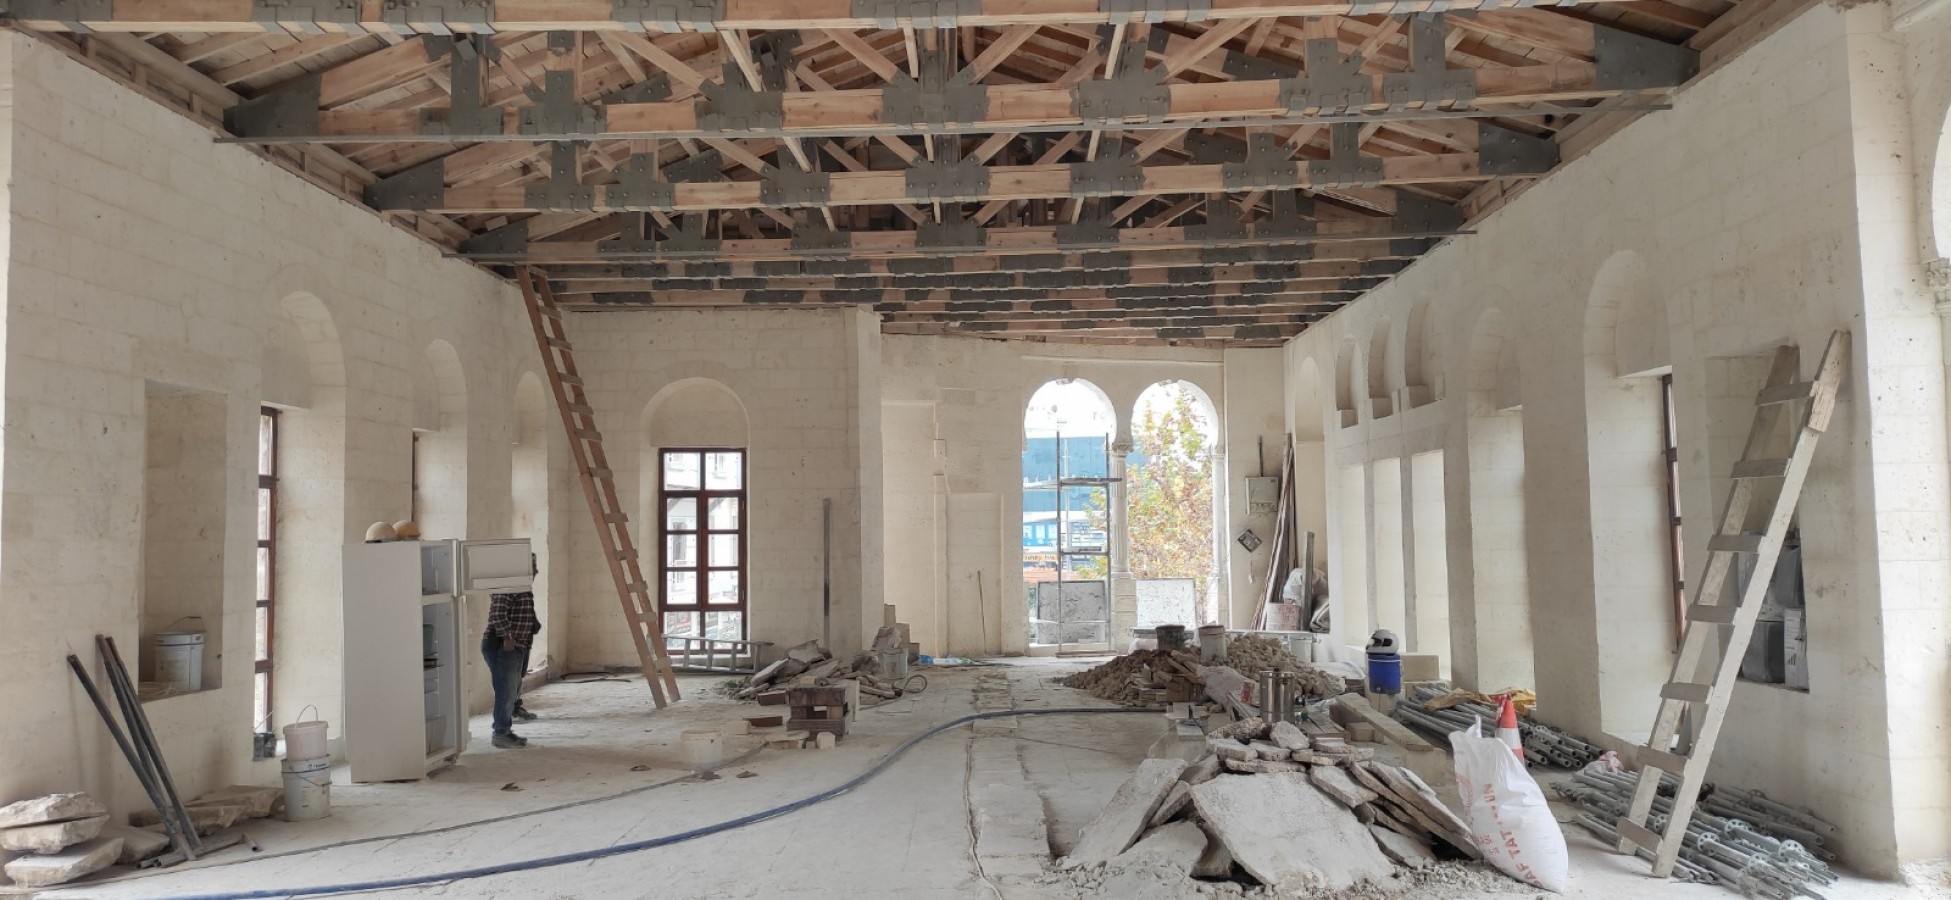 Urfa’da tarihi yapı restore edilip turizme kazandırılacak;